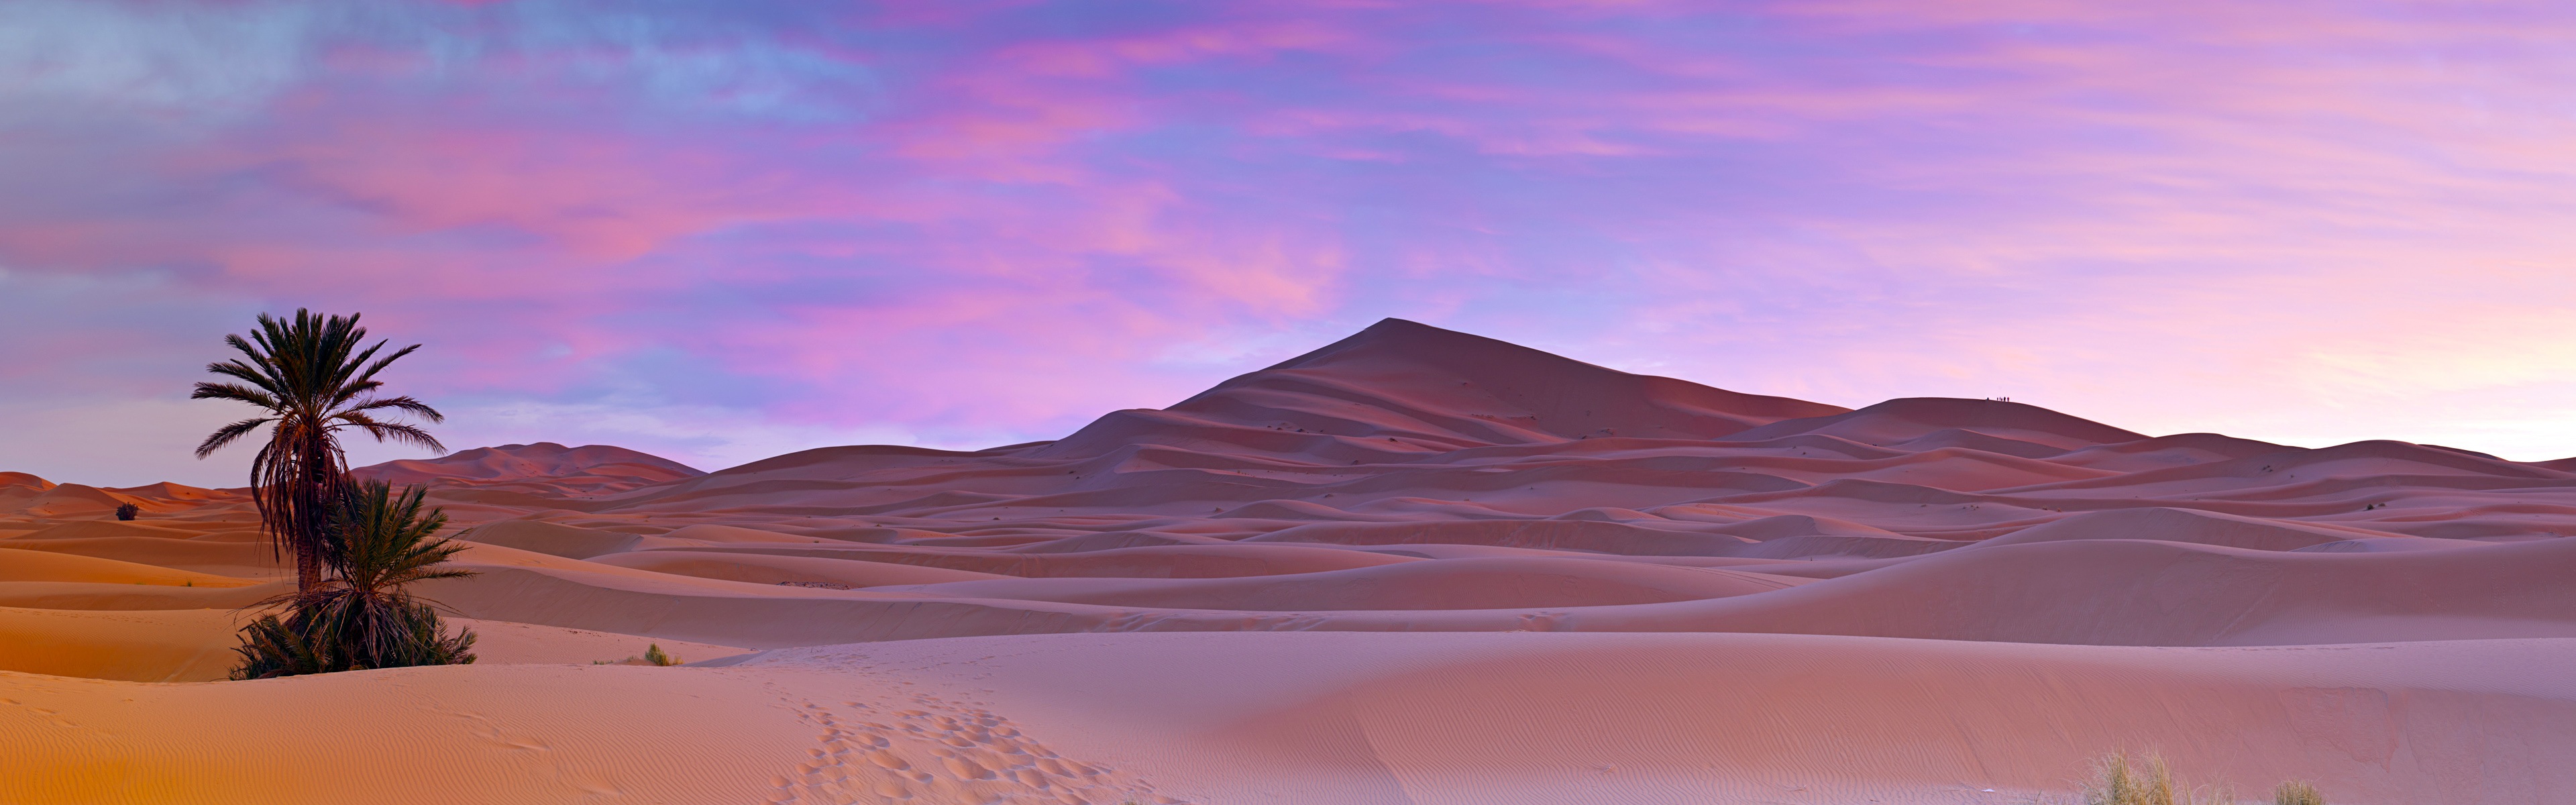 Les déserts chauds et arides, de Windows 8 fonds d'écran widescreen panoramique #1 - 3840x1200